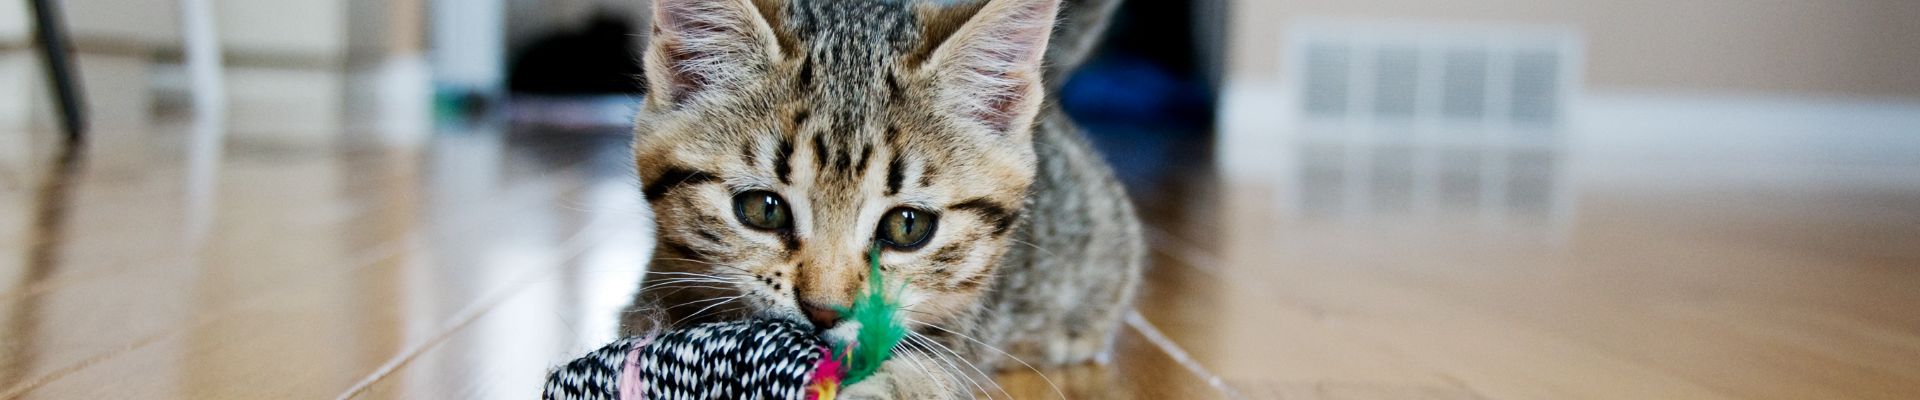 kitten chewing toy wood floor